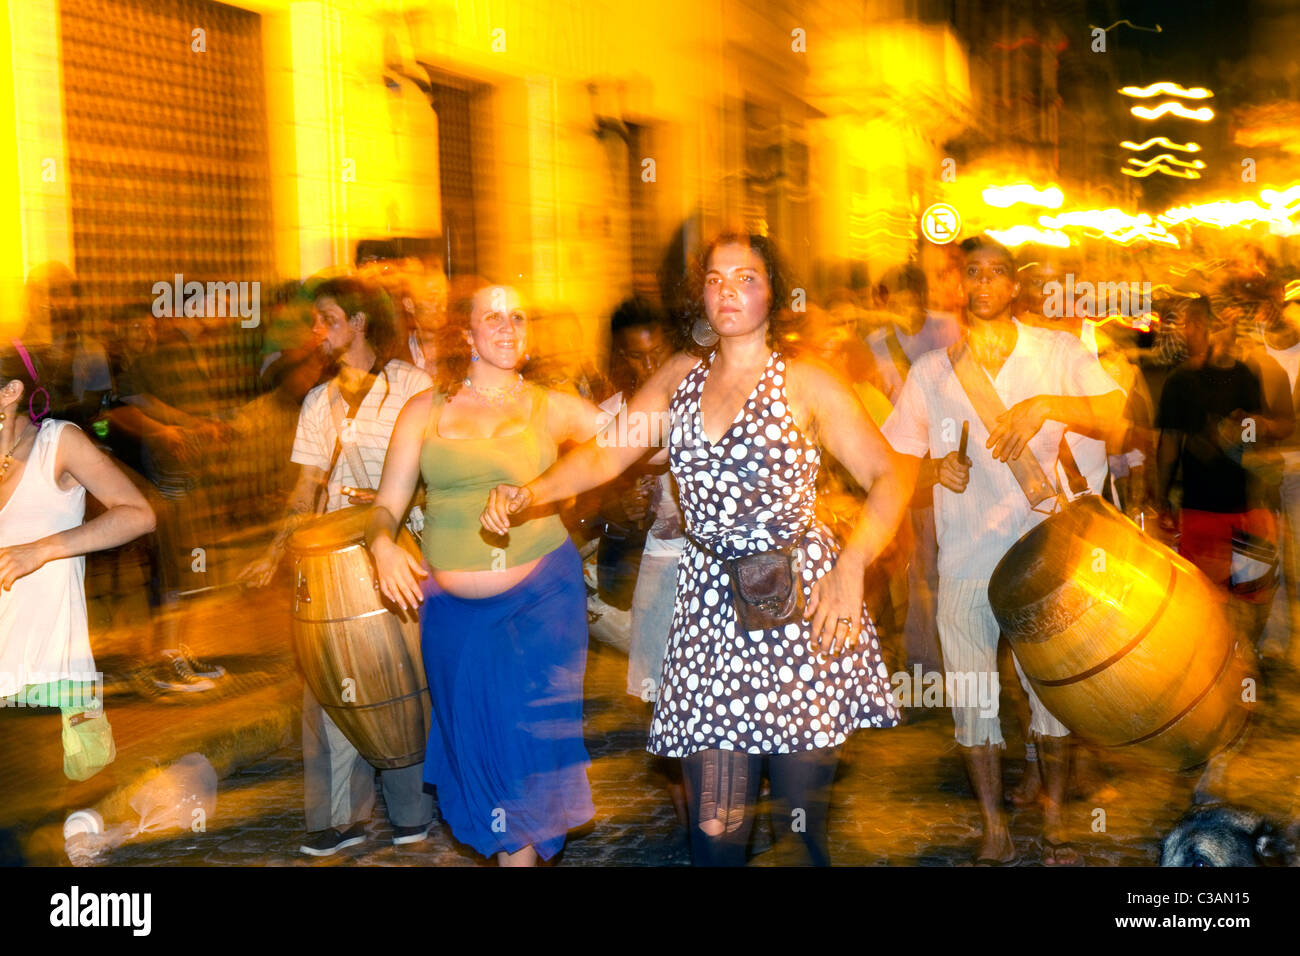 Défilé de gens et de danse le long de la rue Defensa dans le barrio de San Telmo de Buenos Aires, Argentine. Banque D'Images